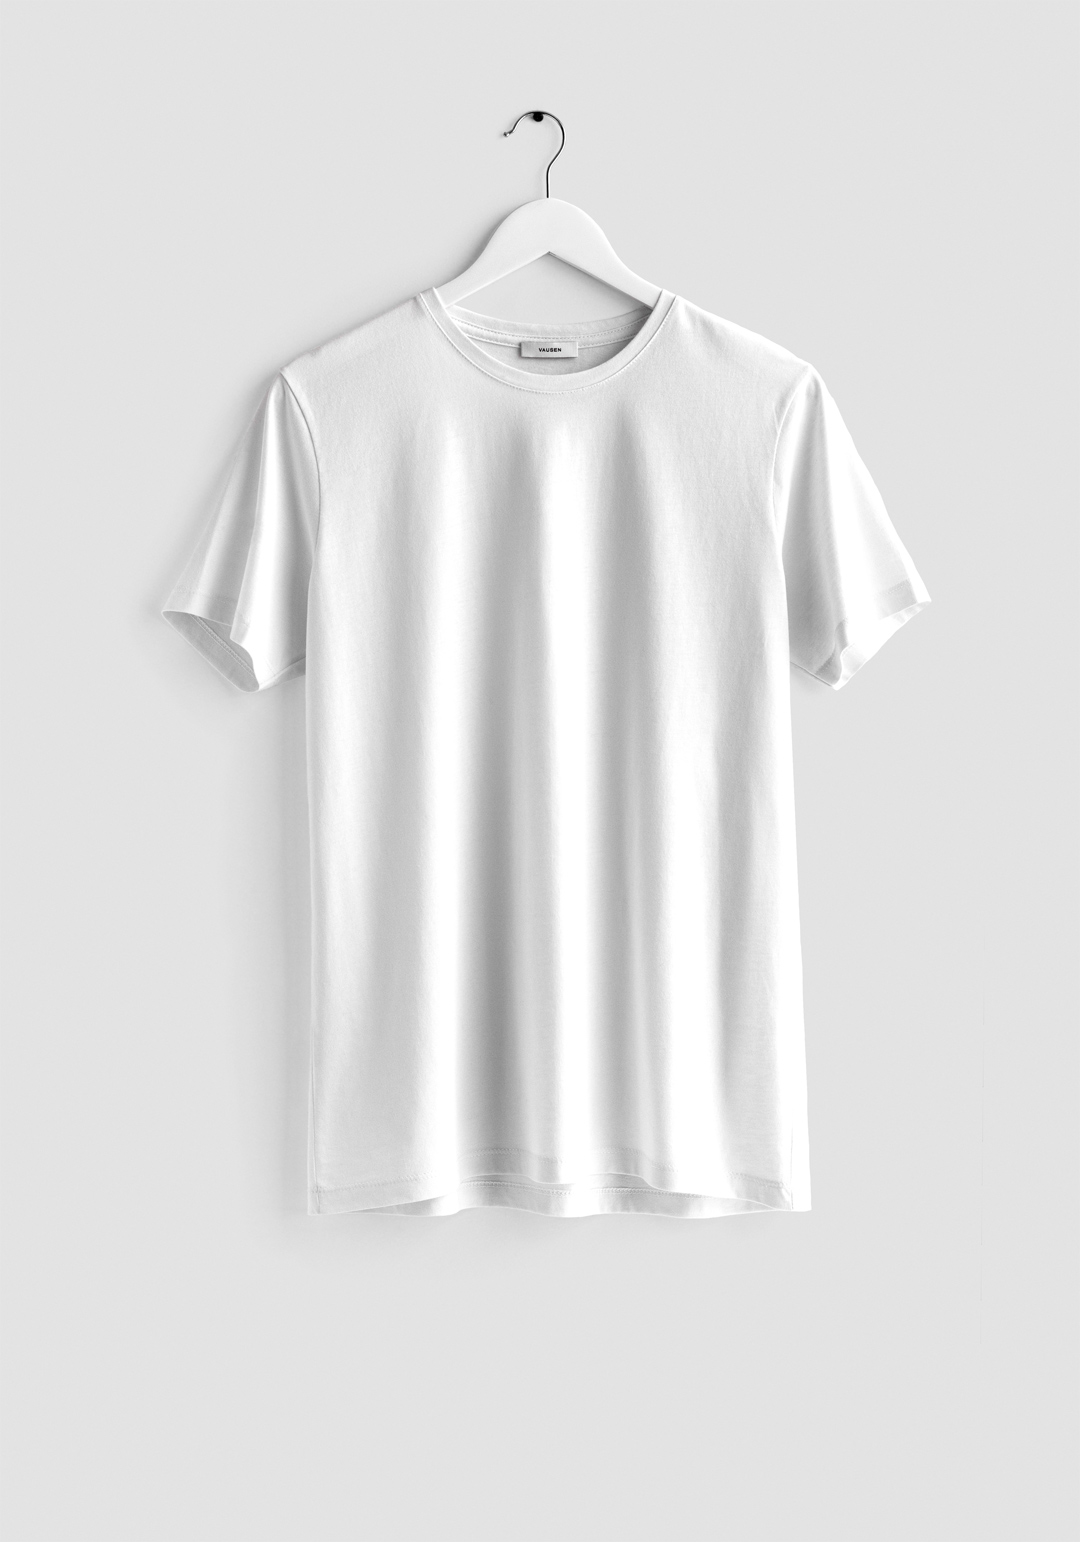 Suyo único Mayordomo Camiseta blanca manga corta - Vausen